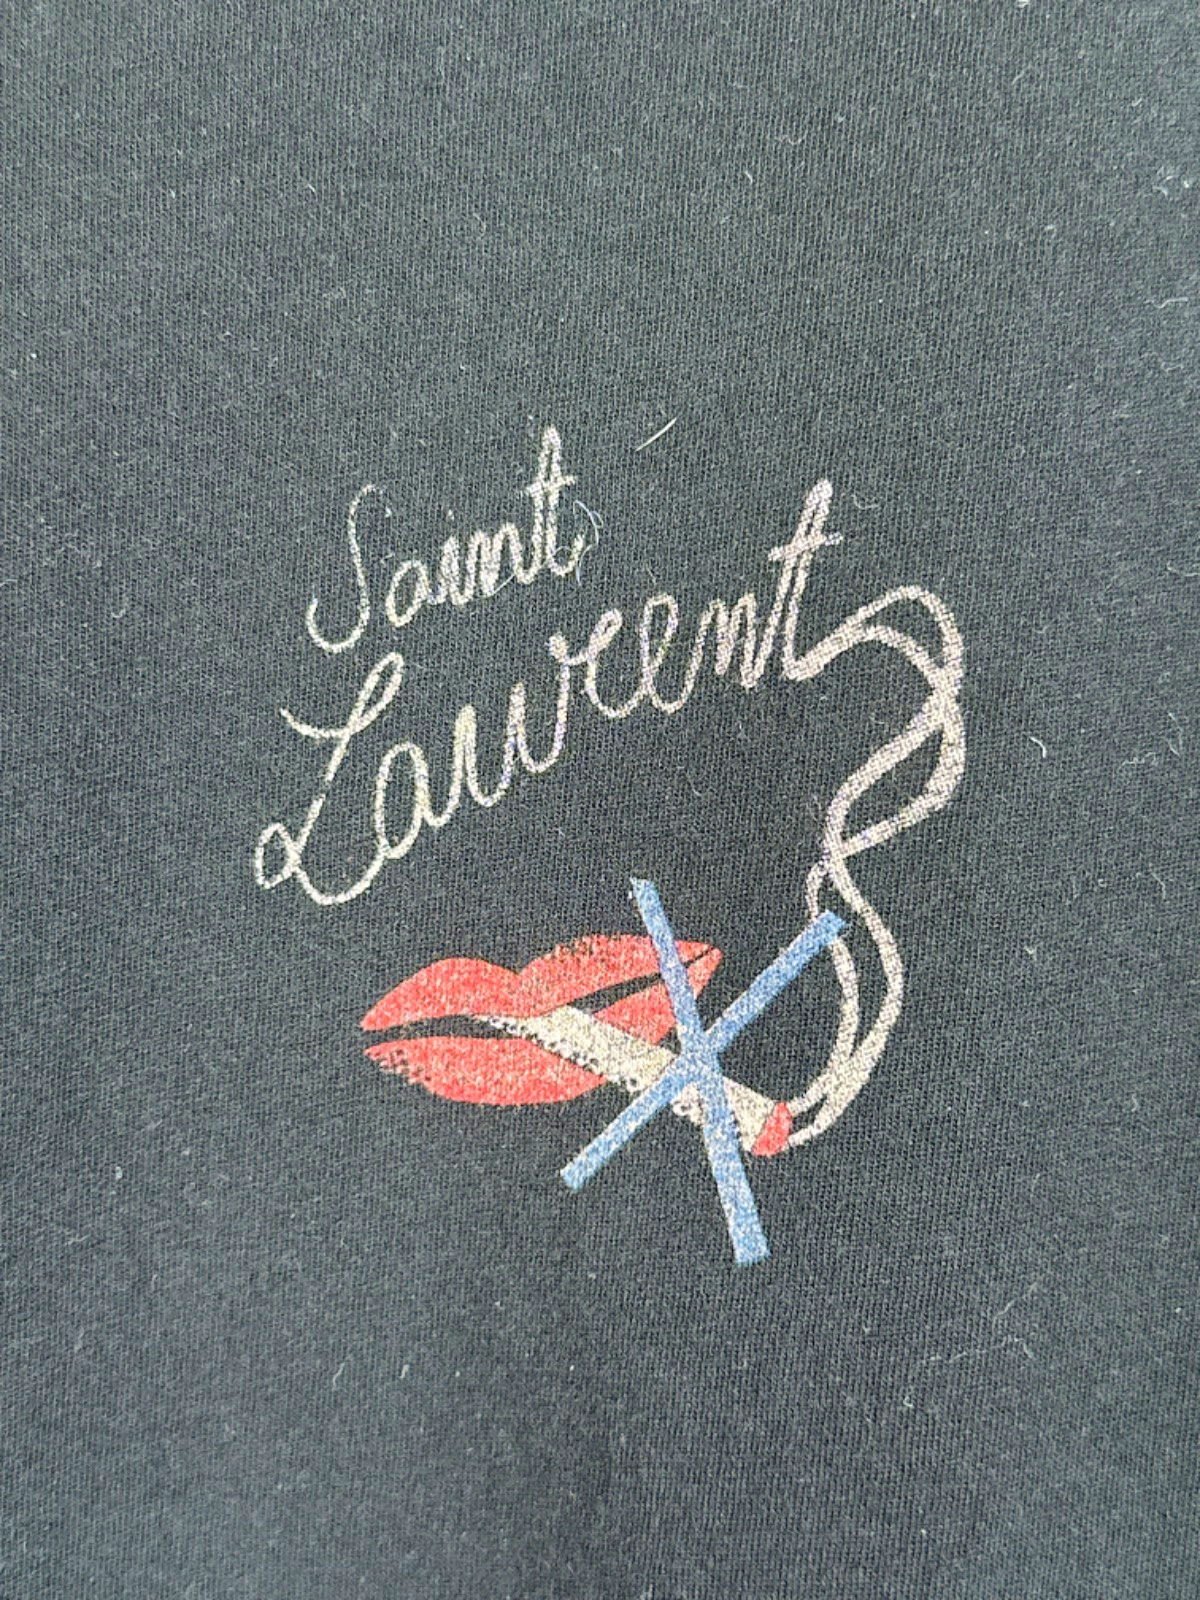 Saint Laurent Black Graphic Print T-Shirt XL